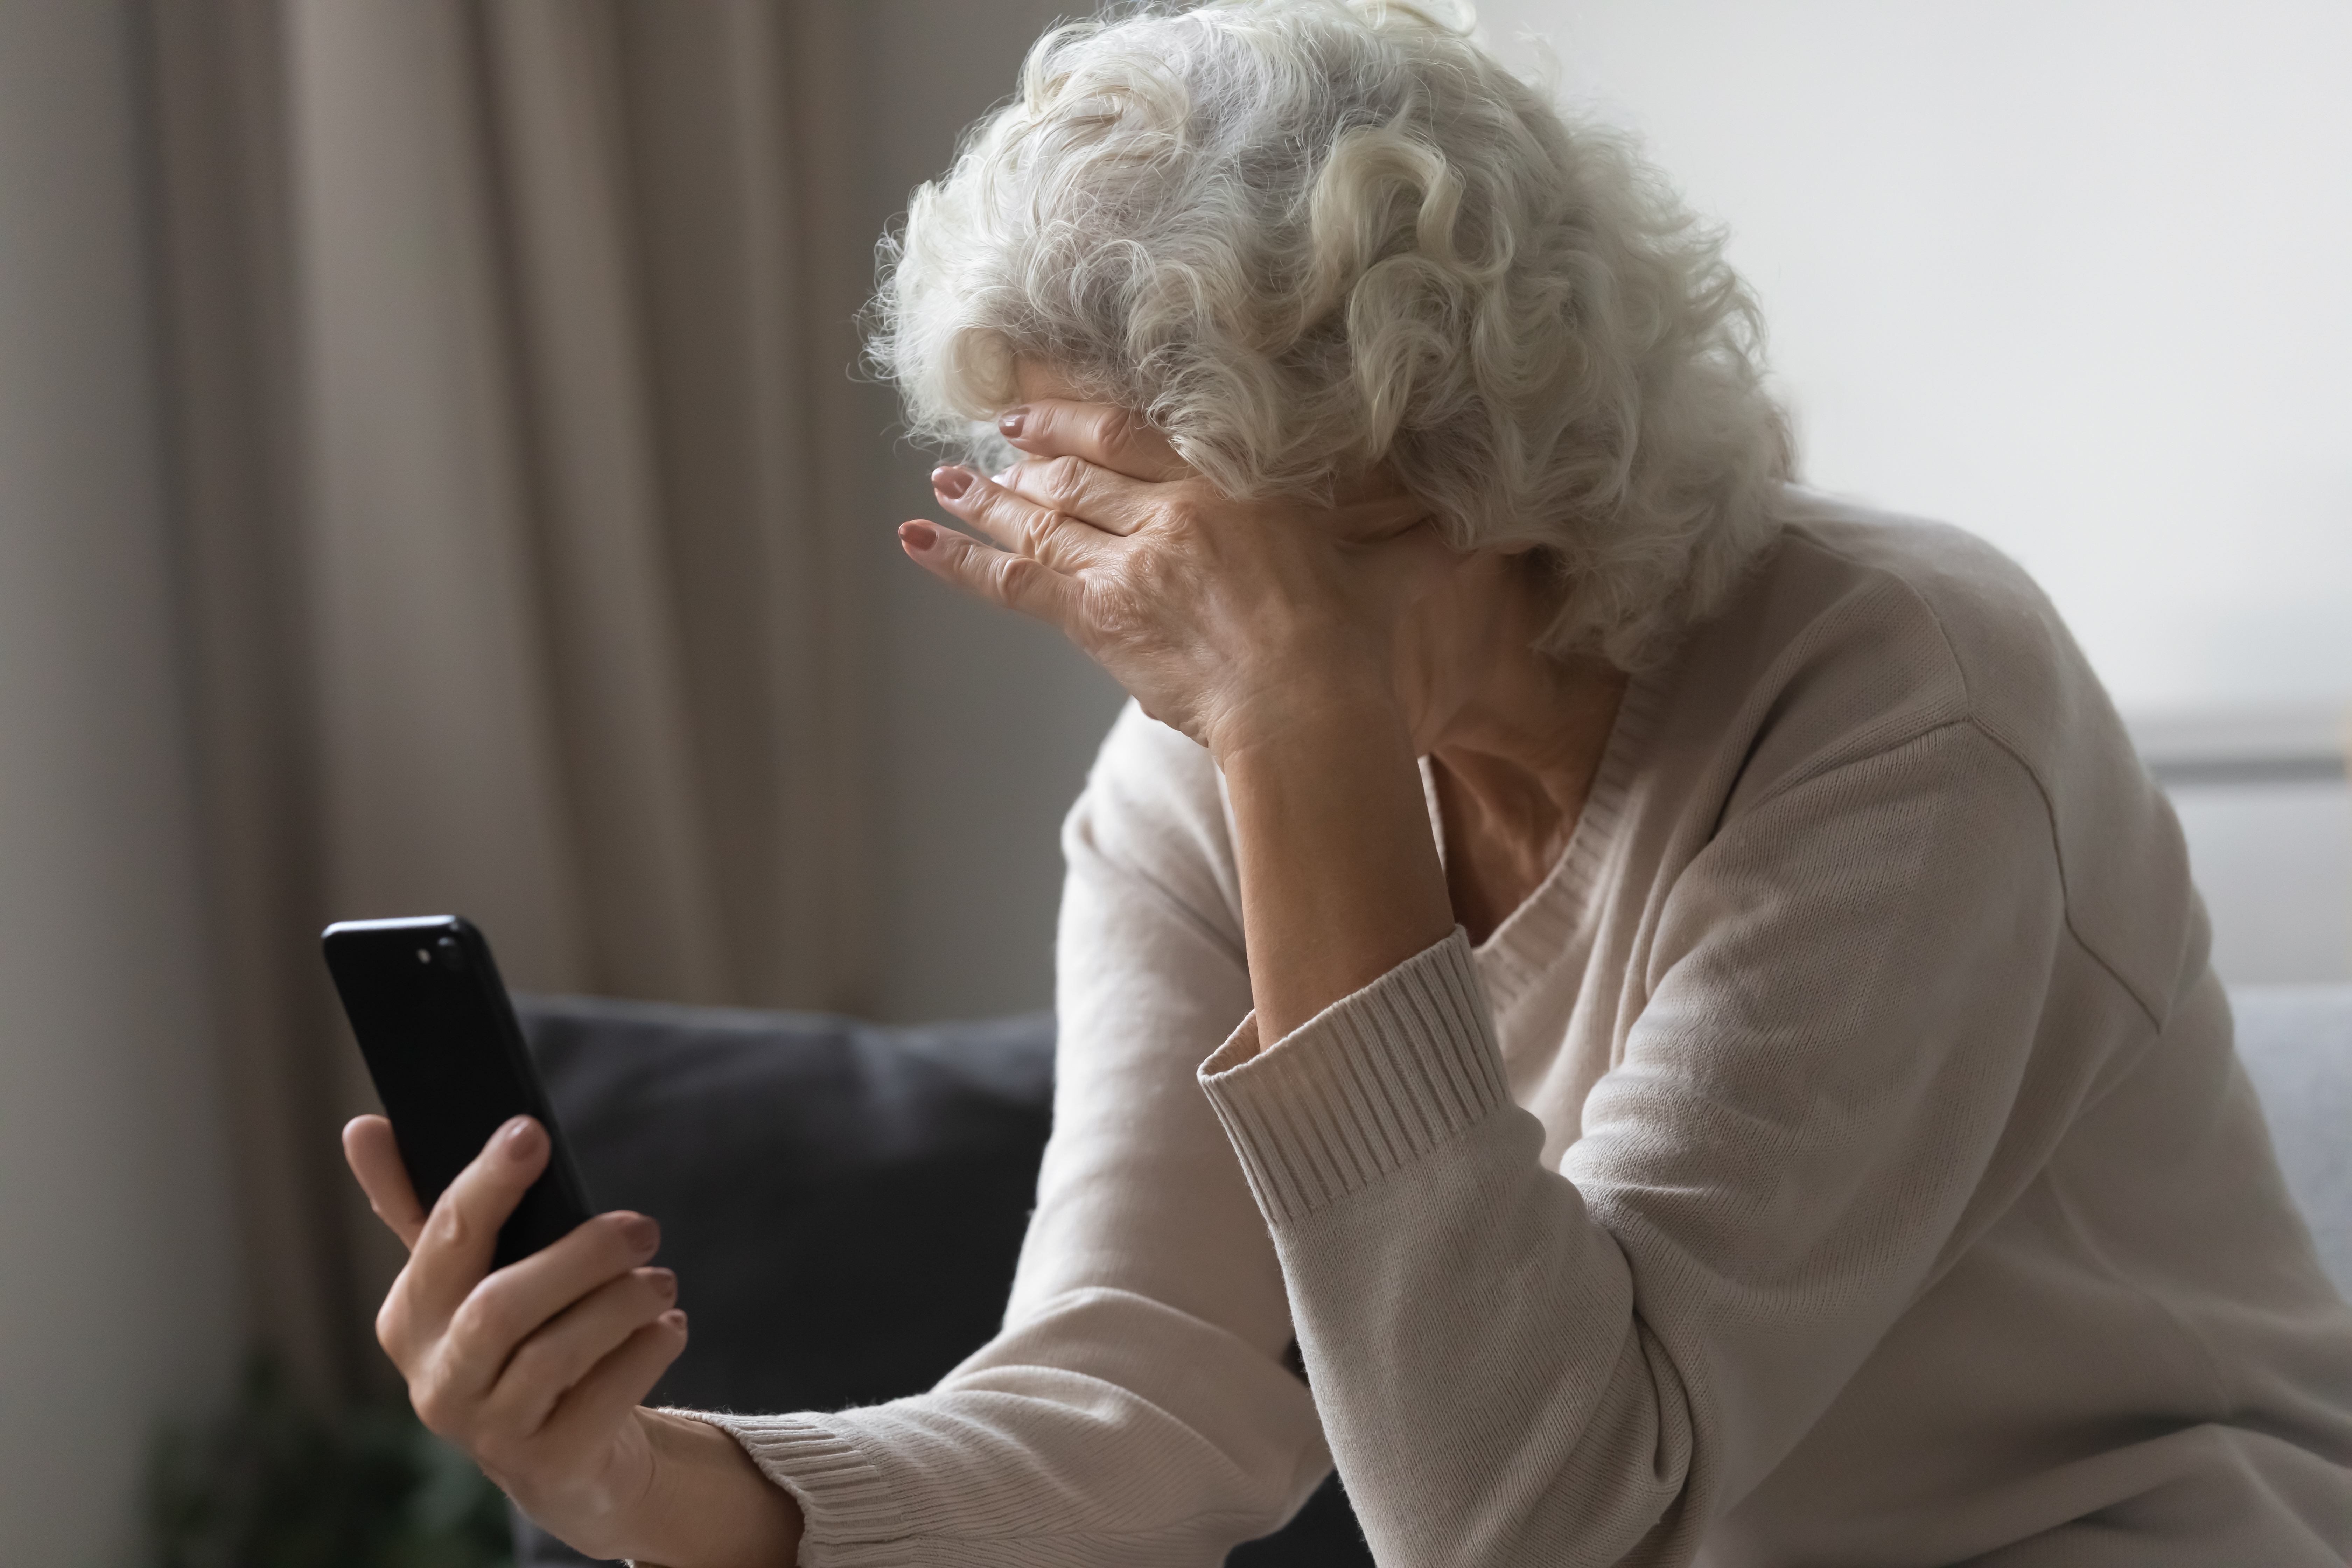 Une dame âgée contrariée utilisant un téléphone portable | Source : Shutterstock